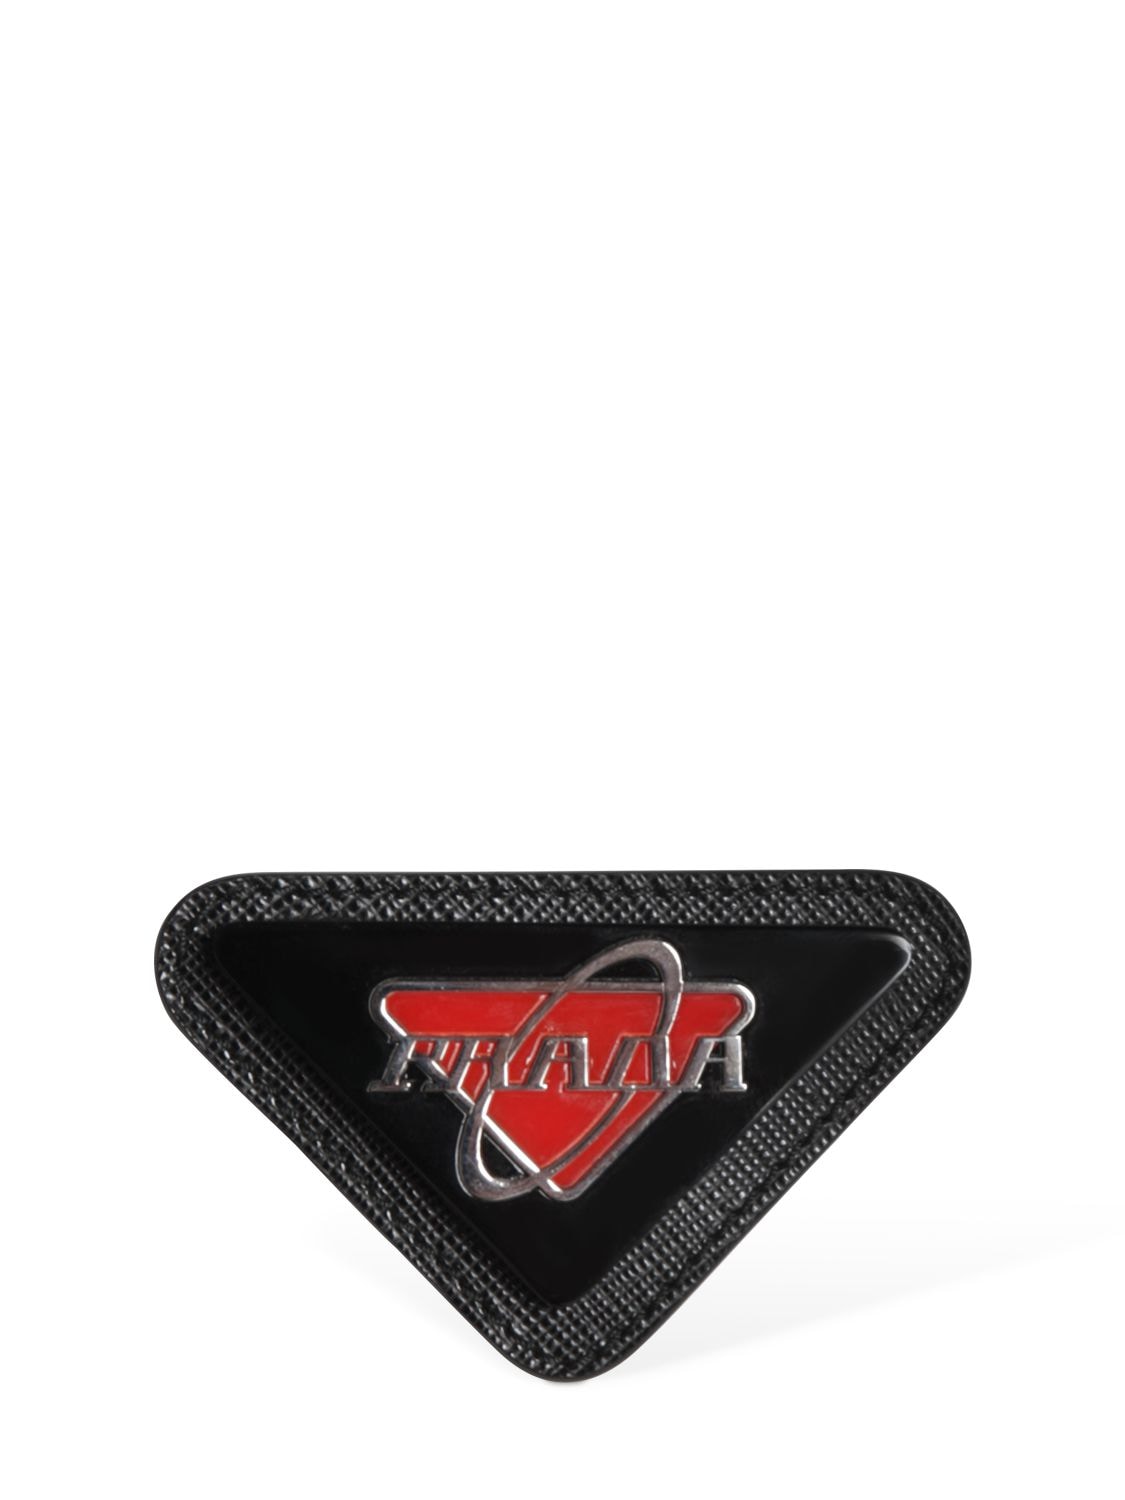 Prada Logo Saffiano Leather Pin In Black,red